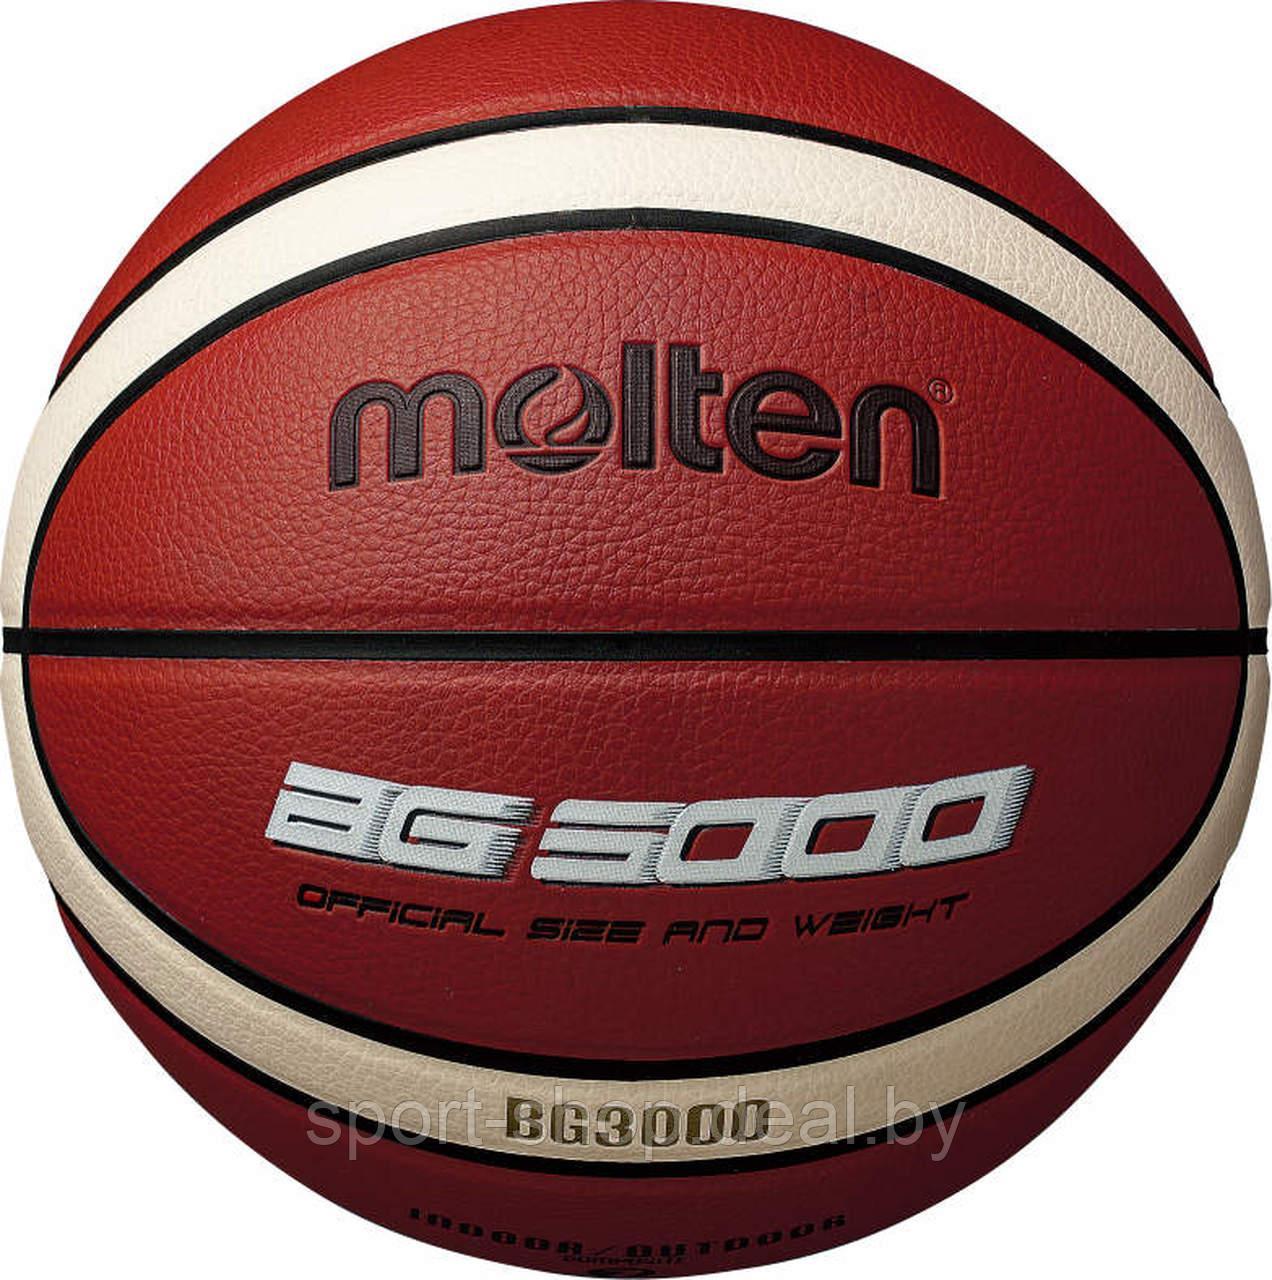 Мяч баскетбольный Molten B7G3000 ,мяч баскетбольный,мяч баскетбол,мяч для баскетбола,мяч размер 7,мяч